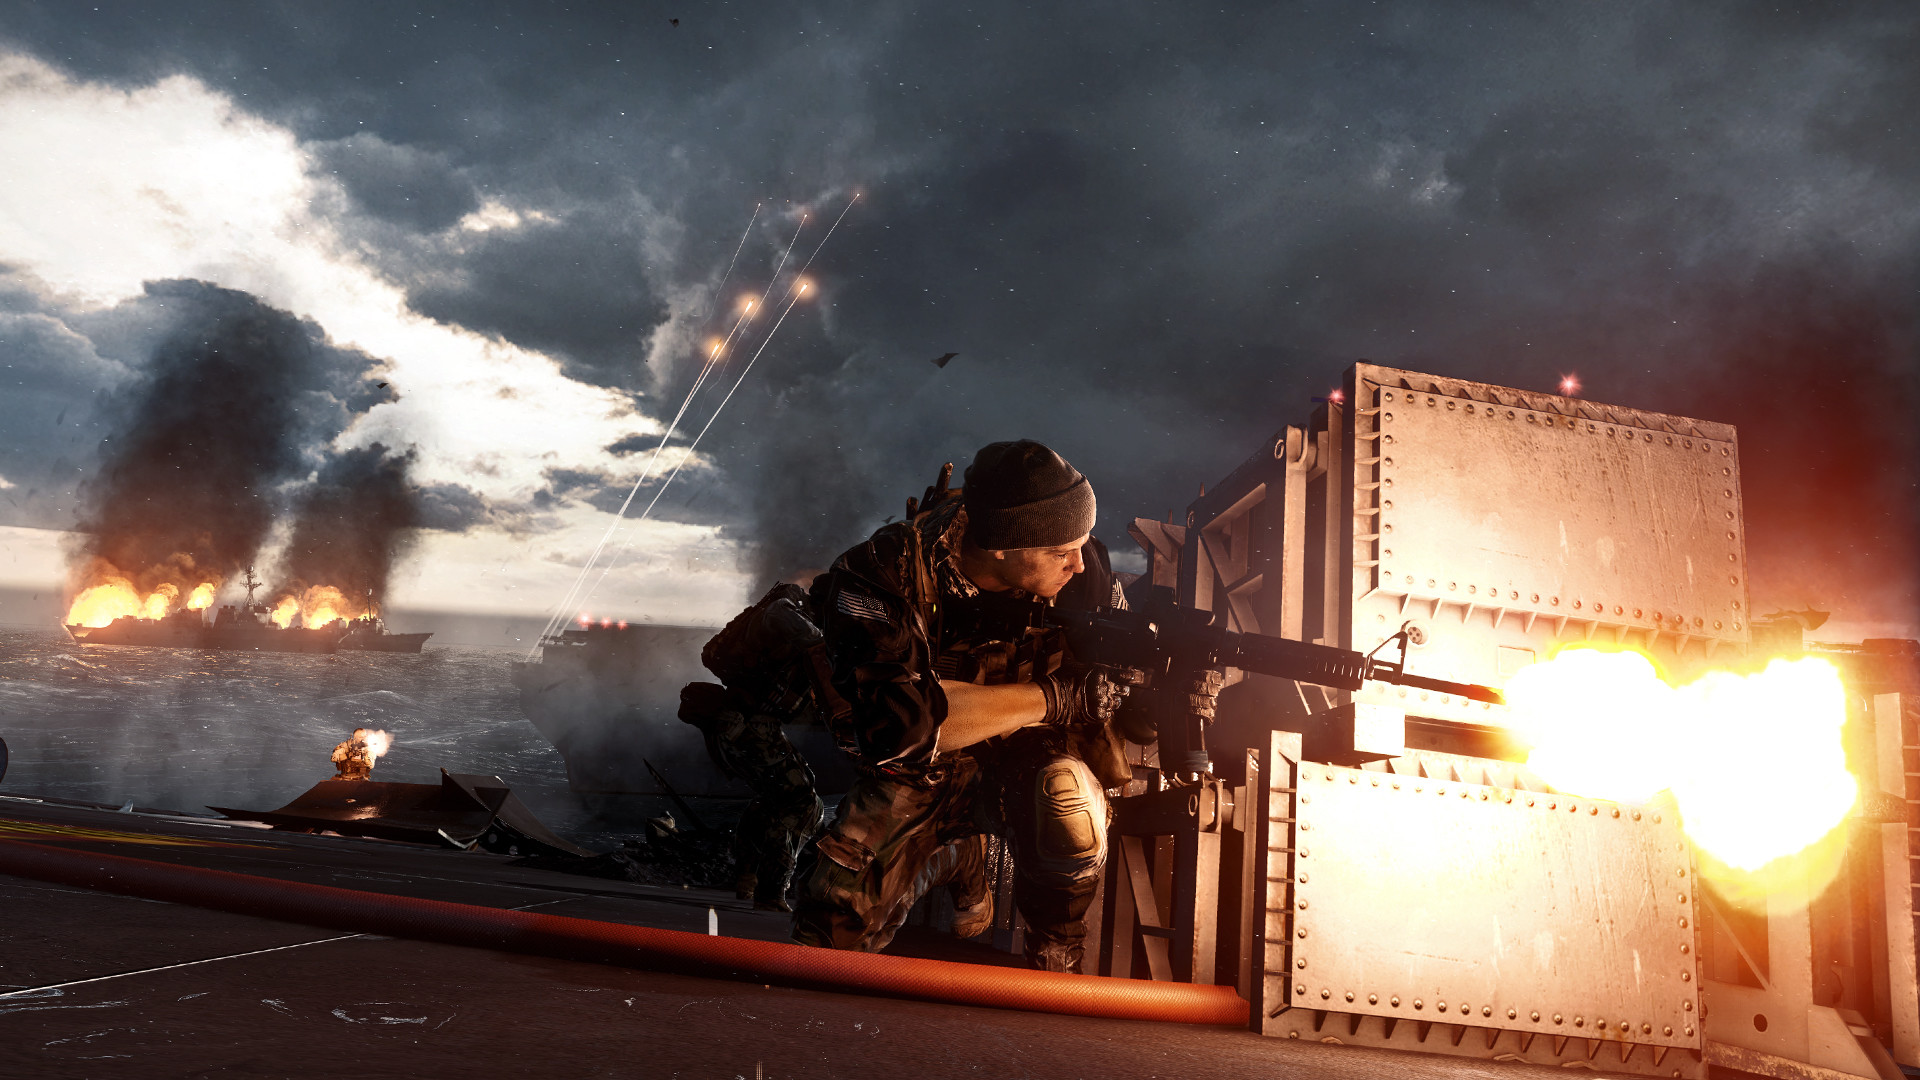 Battlefield 4: Premium Edition (PC) - Steam - Digital Code